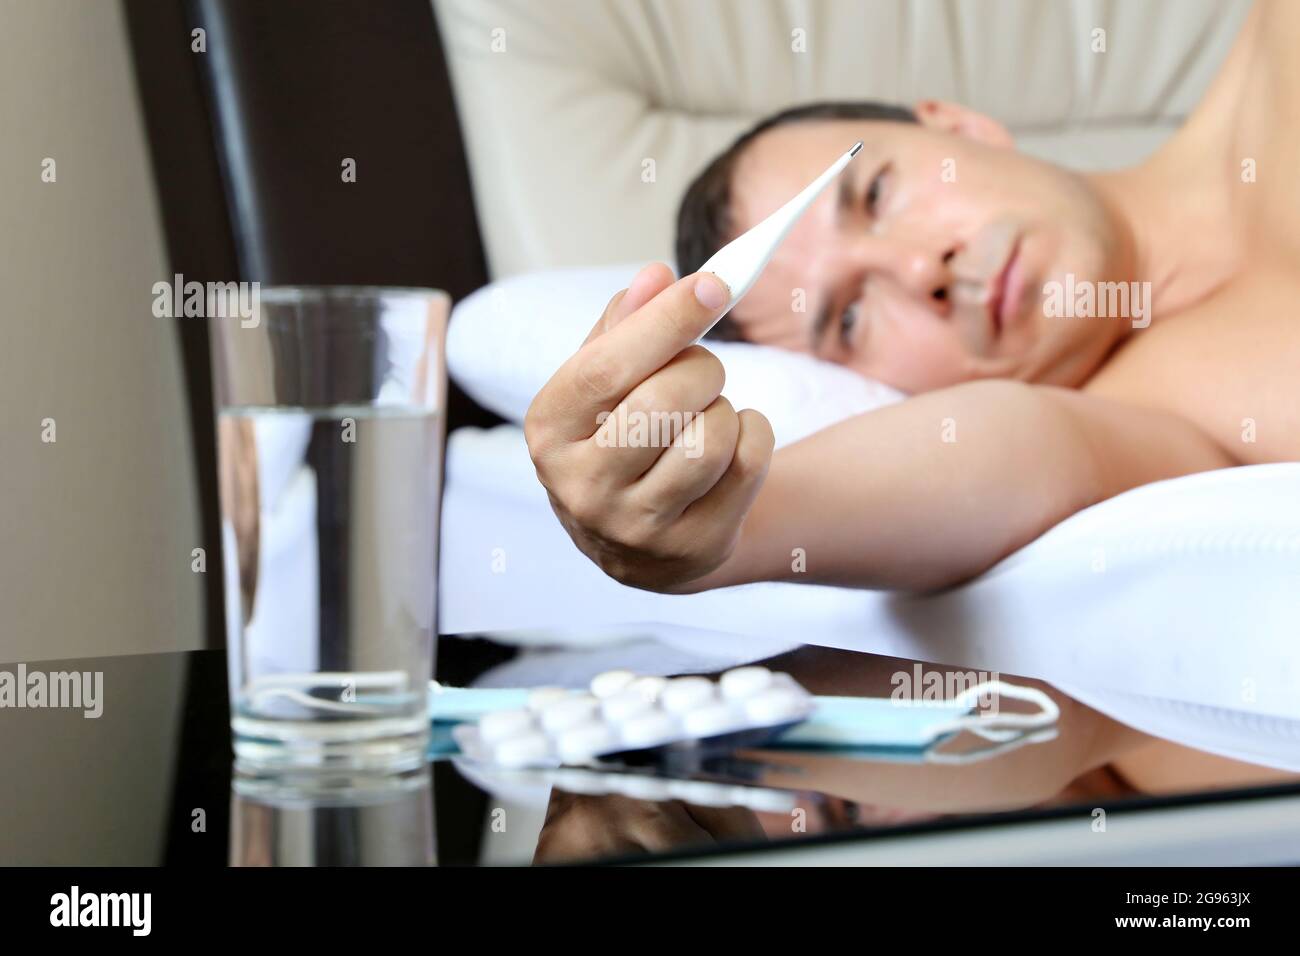 Uomo malato sdraiato con termometro digitale in un letto, pillole e bicchiere d'acqua in primo piano. Concetto di malattia, febbre, sintomi del coronavirus Foto Stock